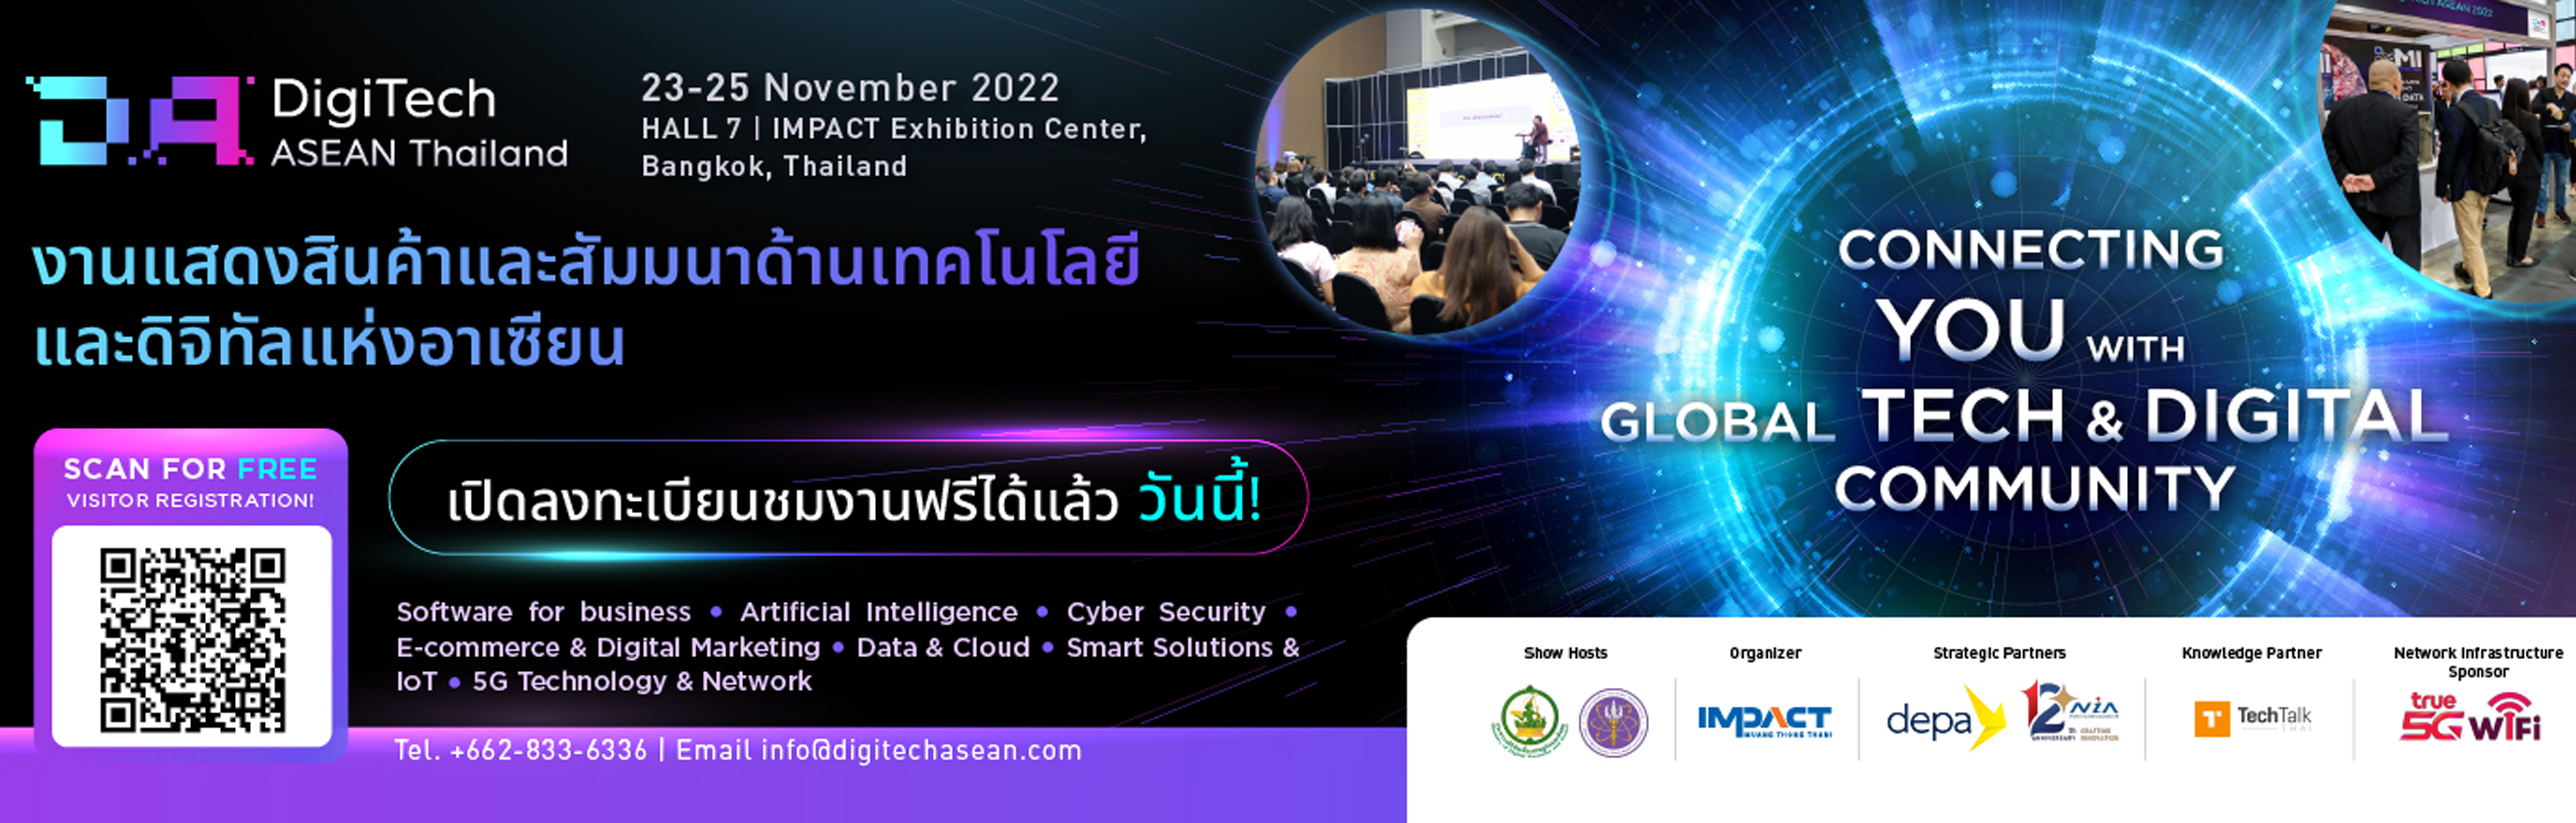 DigiTech ASEAN Thailand 2022